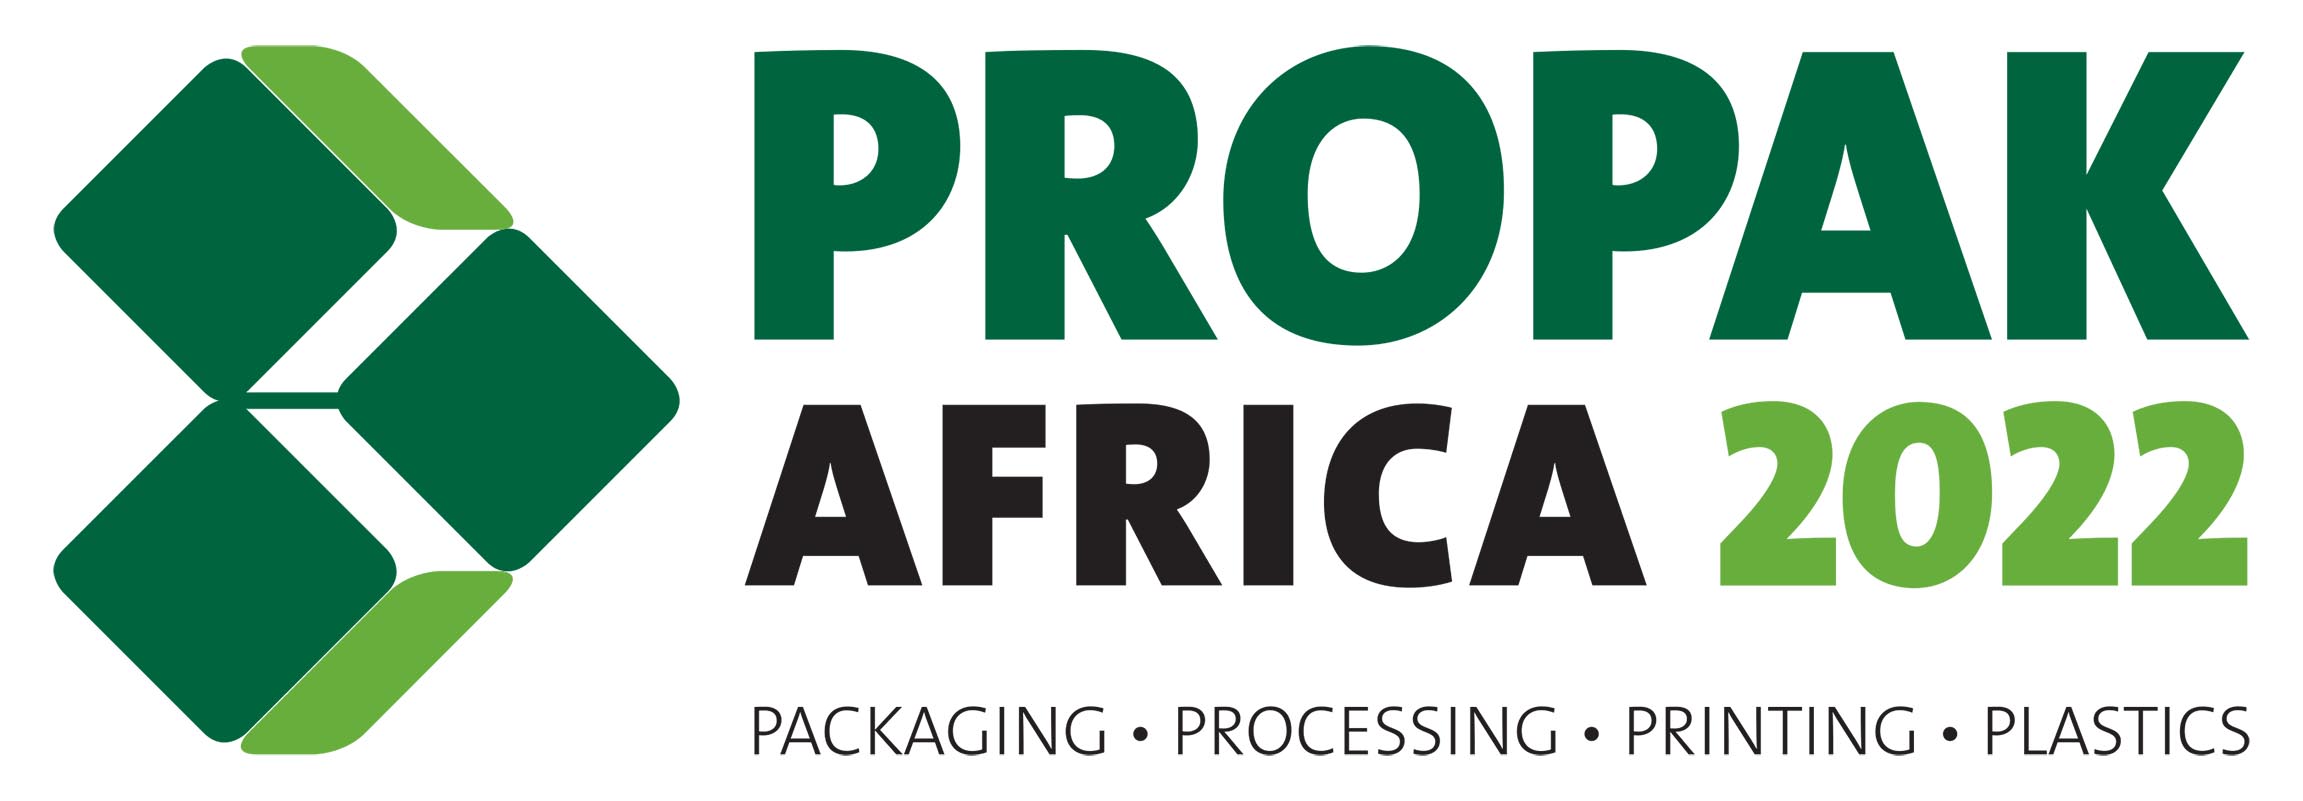 propak_africa_2022_logo.jpg